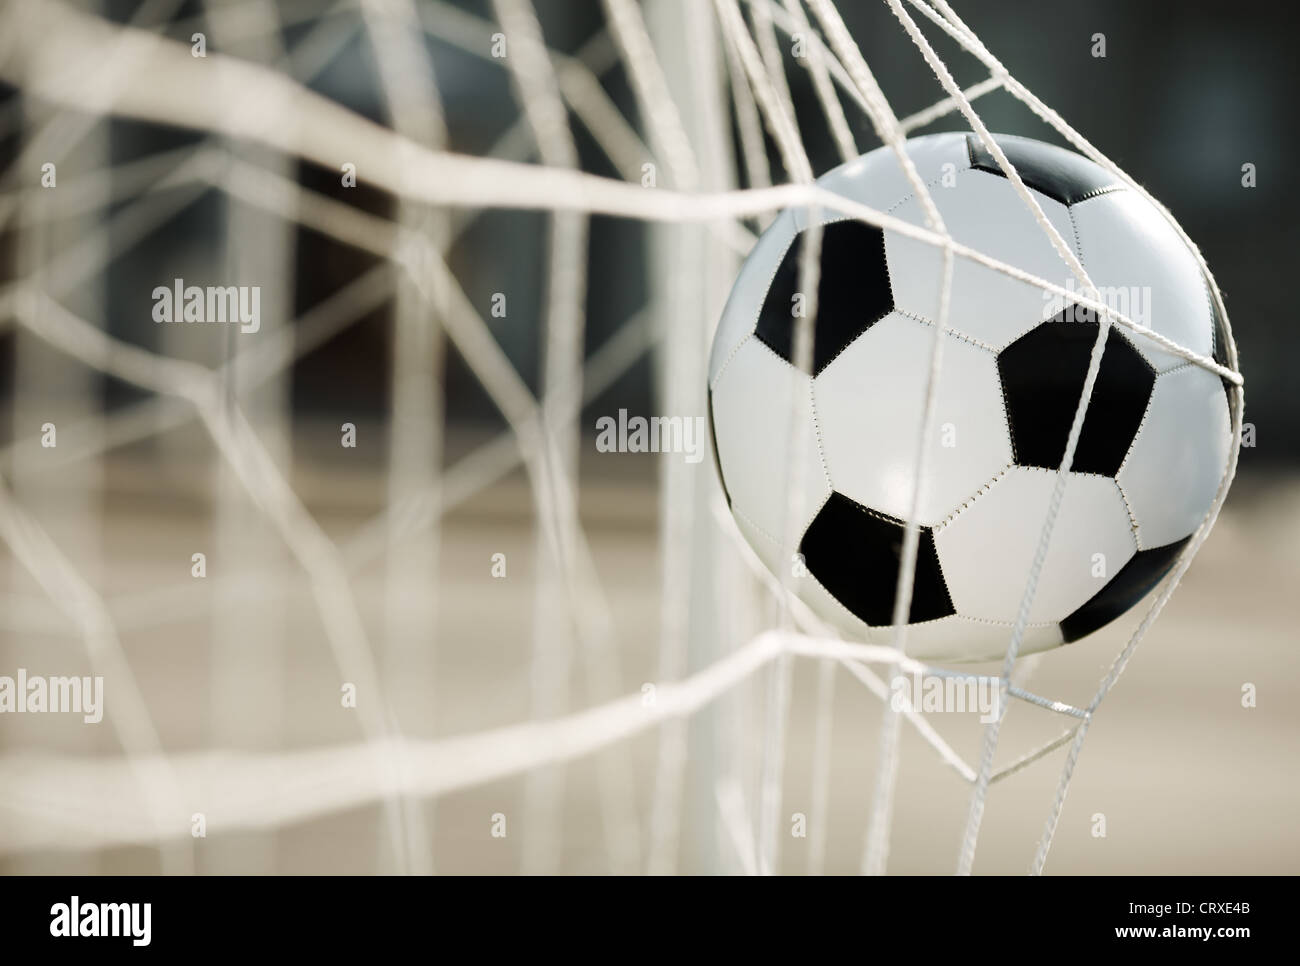 Soccer ball going into goal net Stock Photo